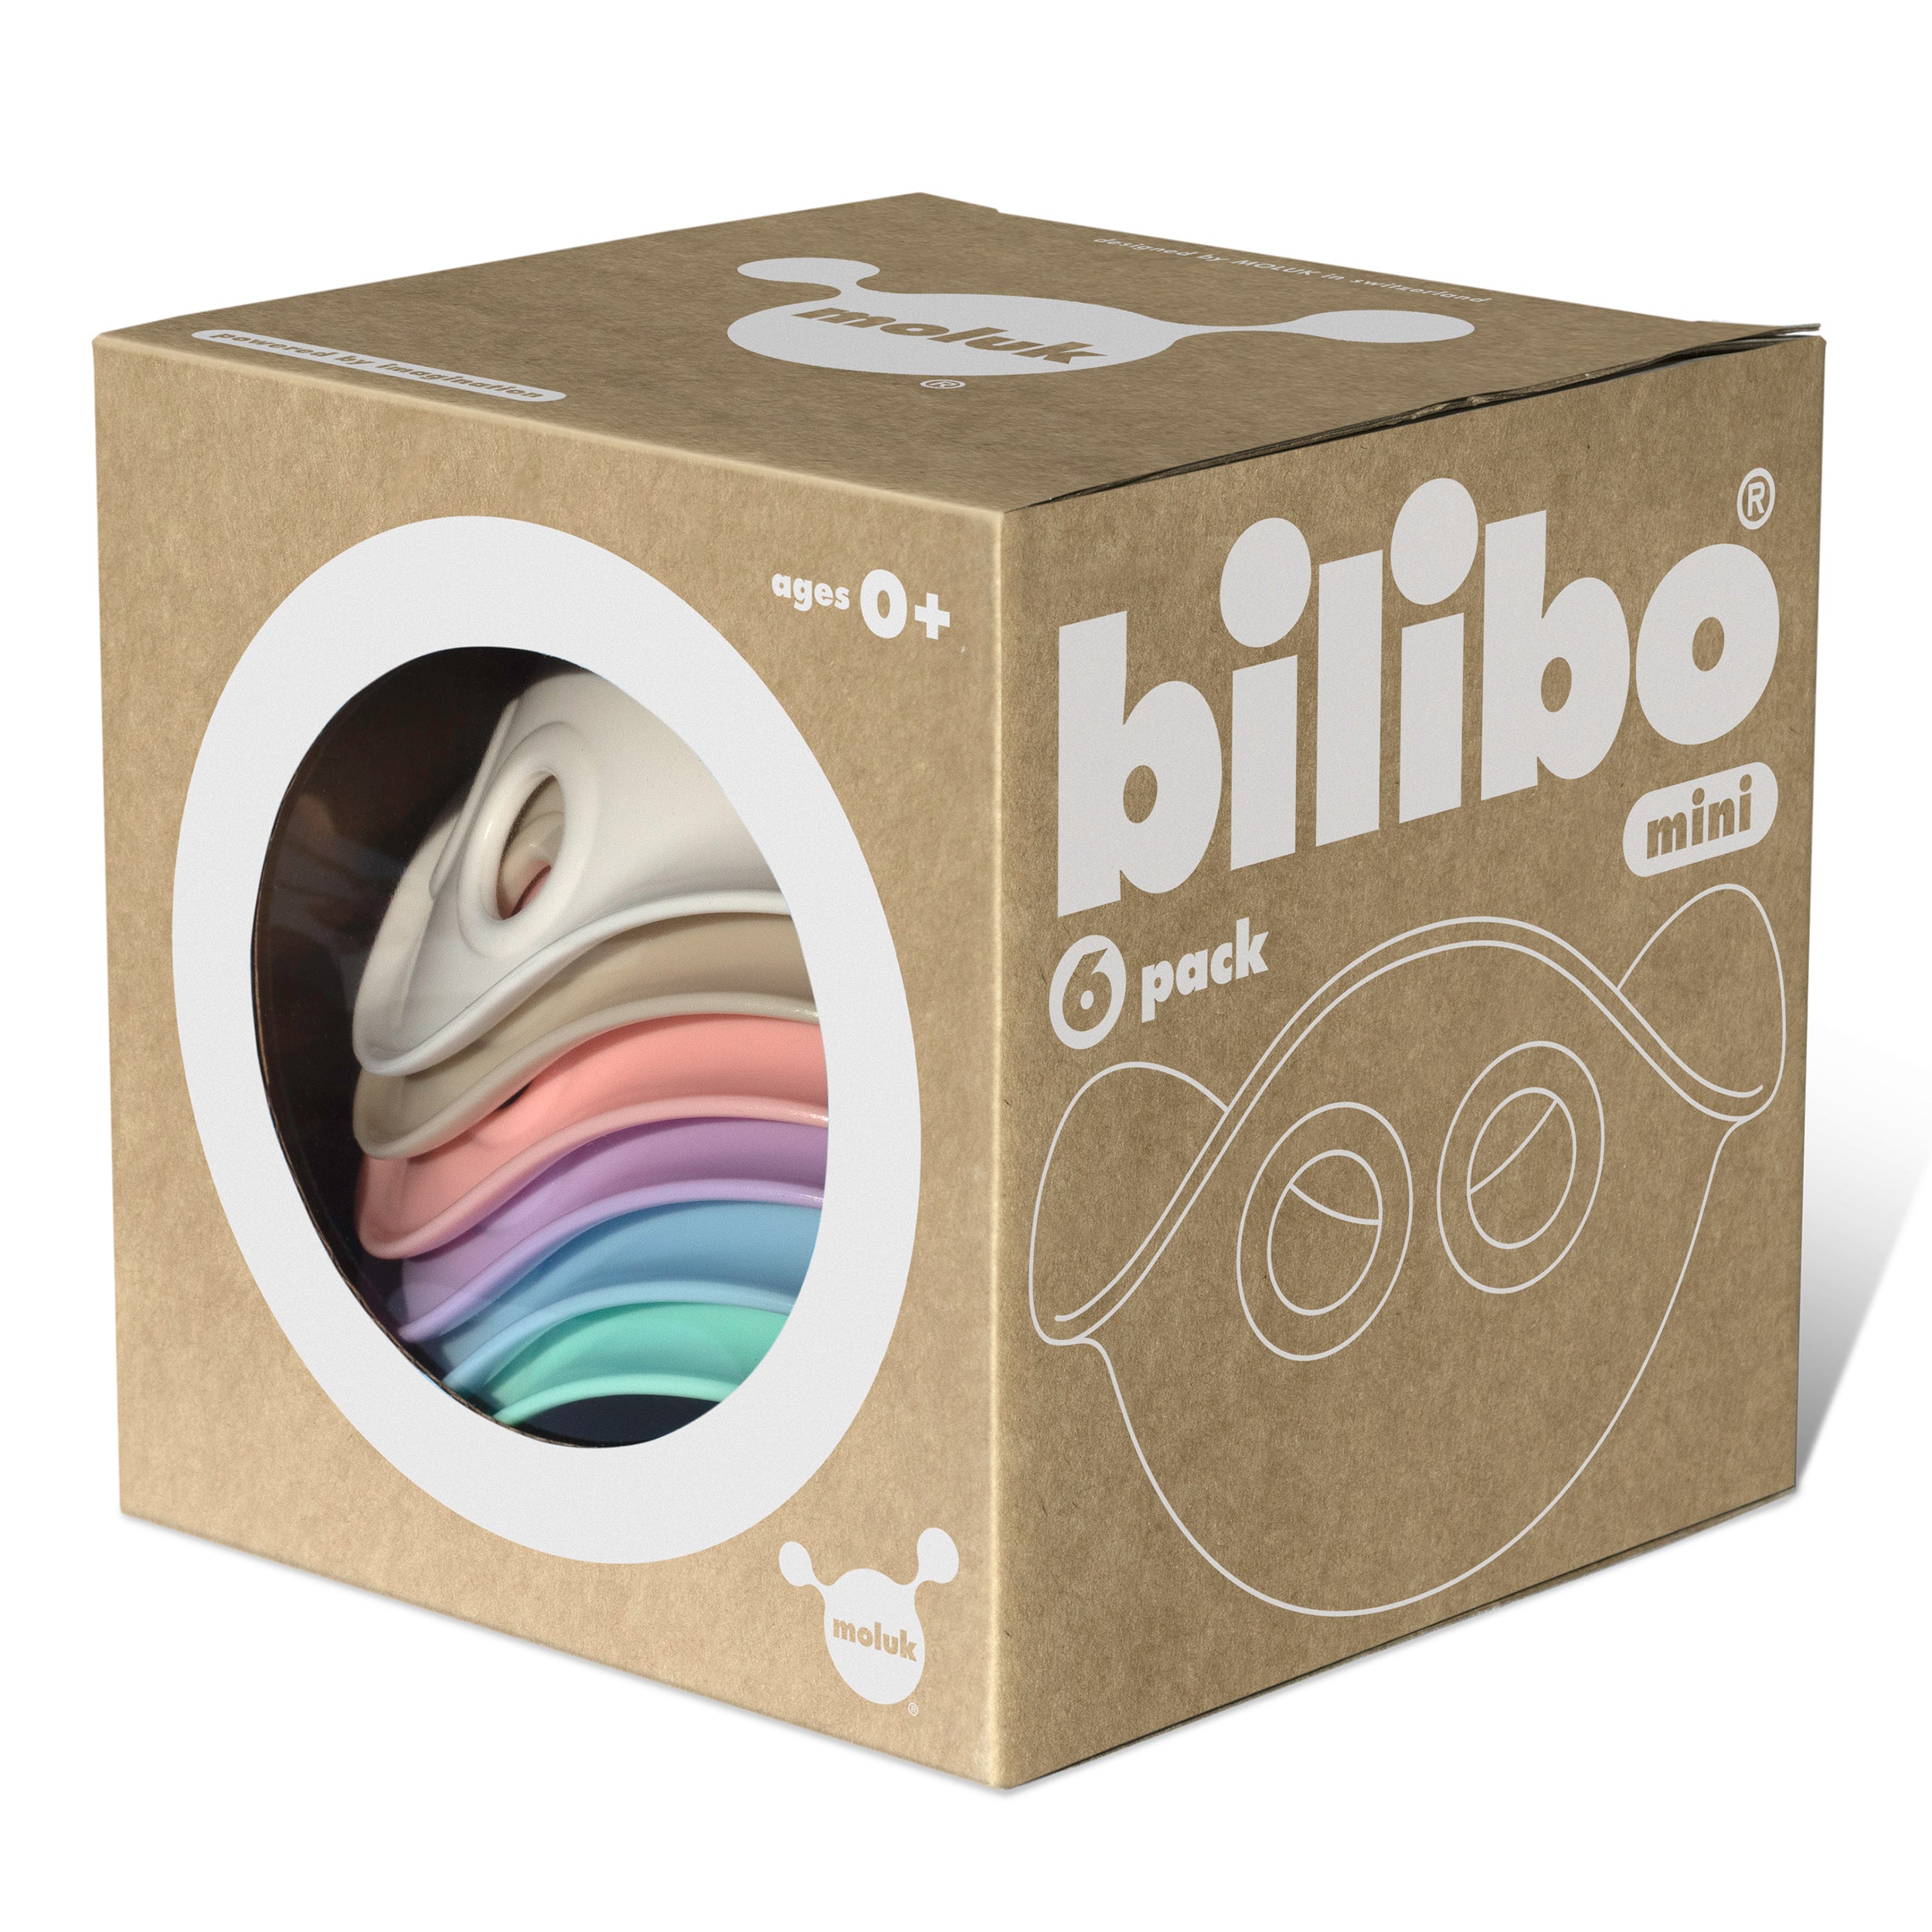 Bilibo Mini